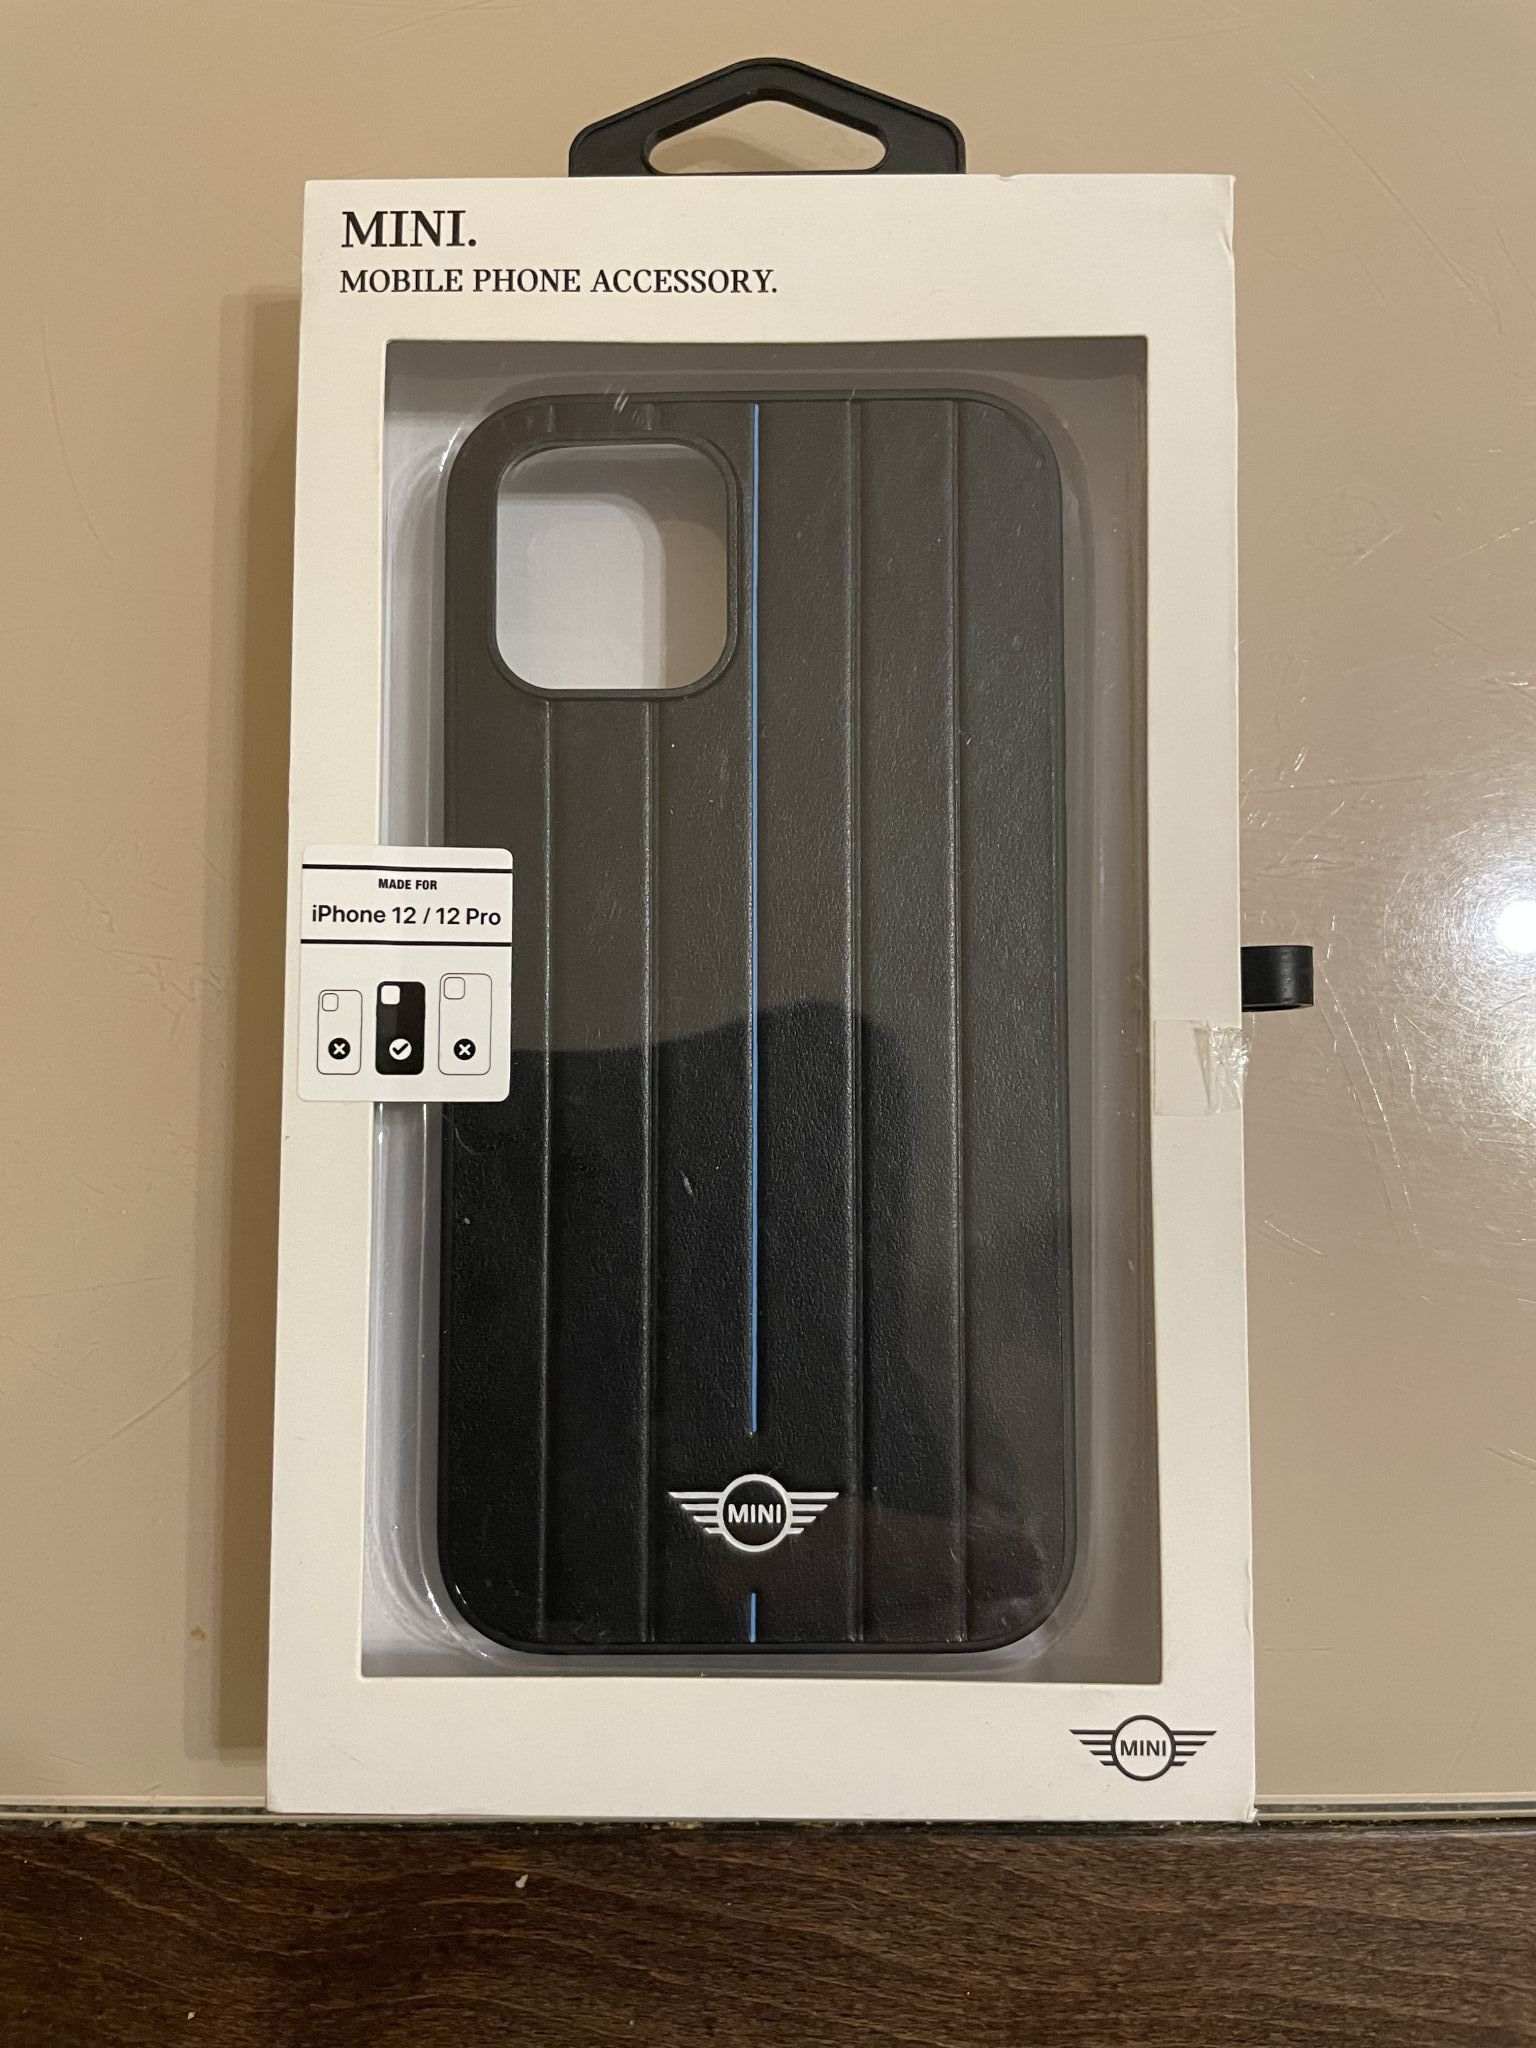 Чехол CG-MOBILE Mini HOT STAMPED для iPhone 12/12 Pro, черный/синий —  купить в интернет-магазине ОНЛАЙН ТРЕЙД.РУ